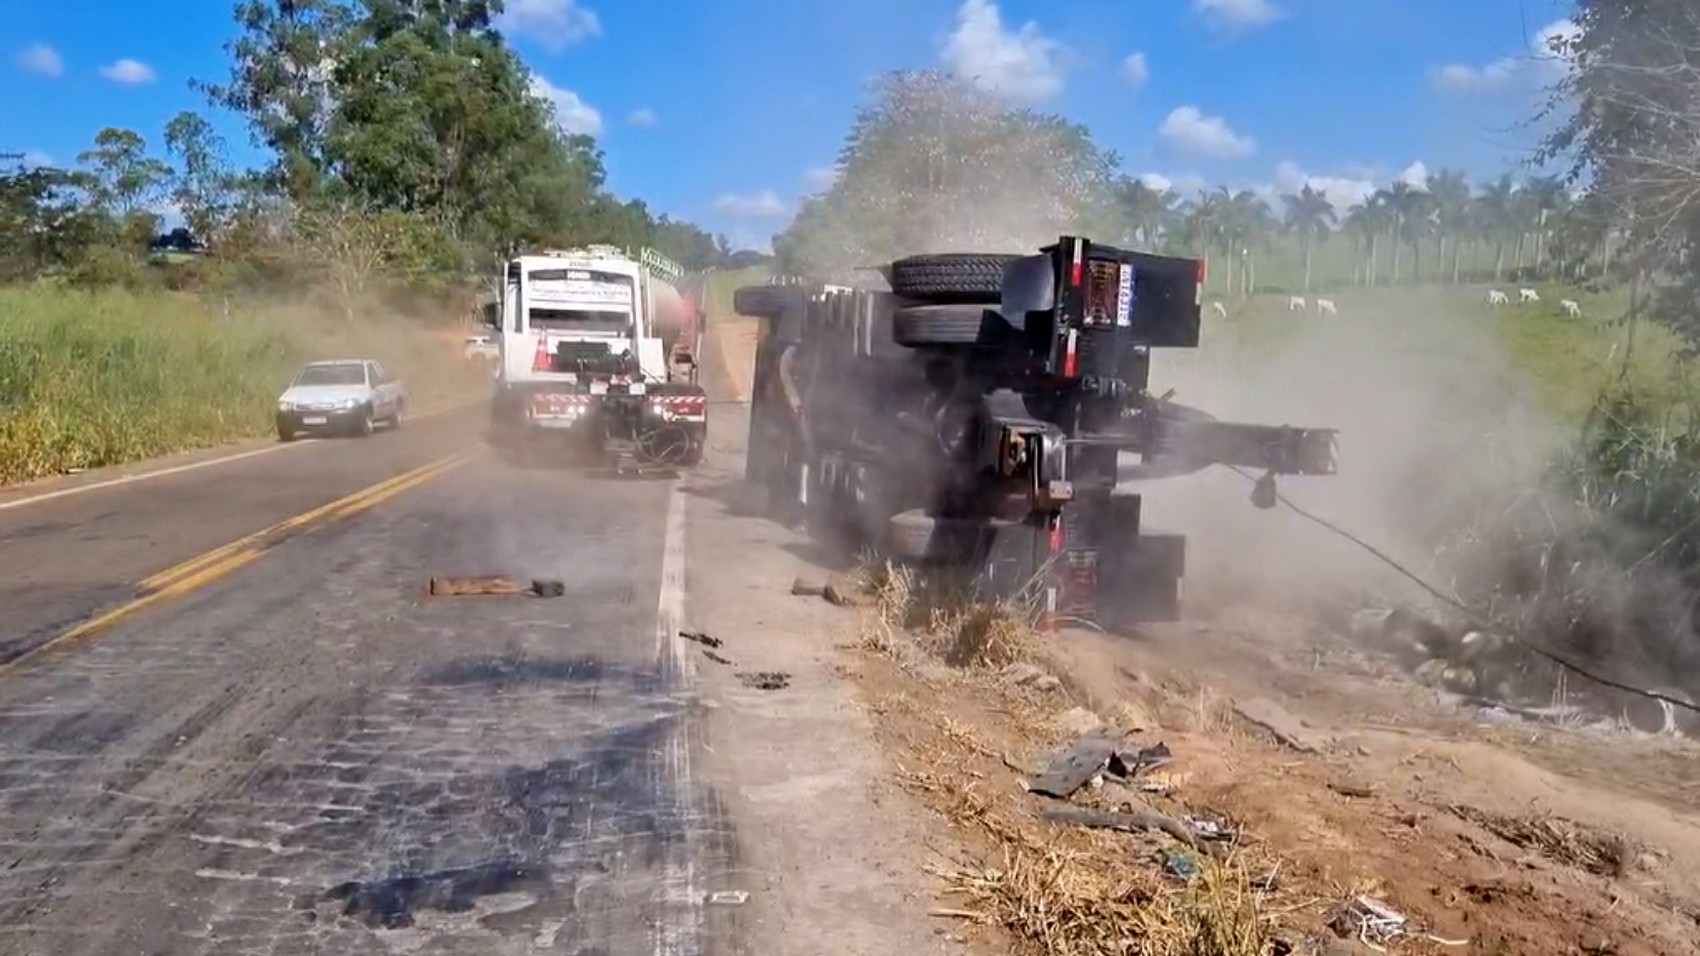 Caminhão-guincho tomba ao tentar retirar de córrego carreta envolvida em acidente, na MG-344, entre Cássia e Pratápolis